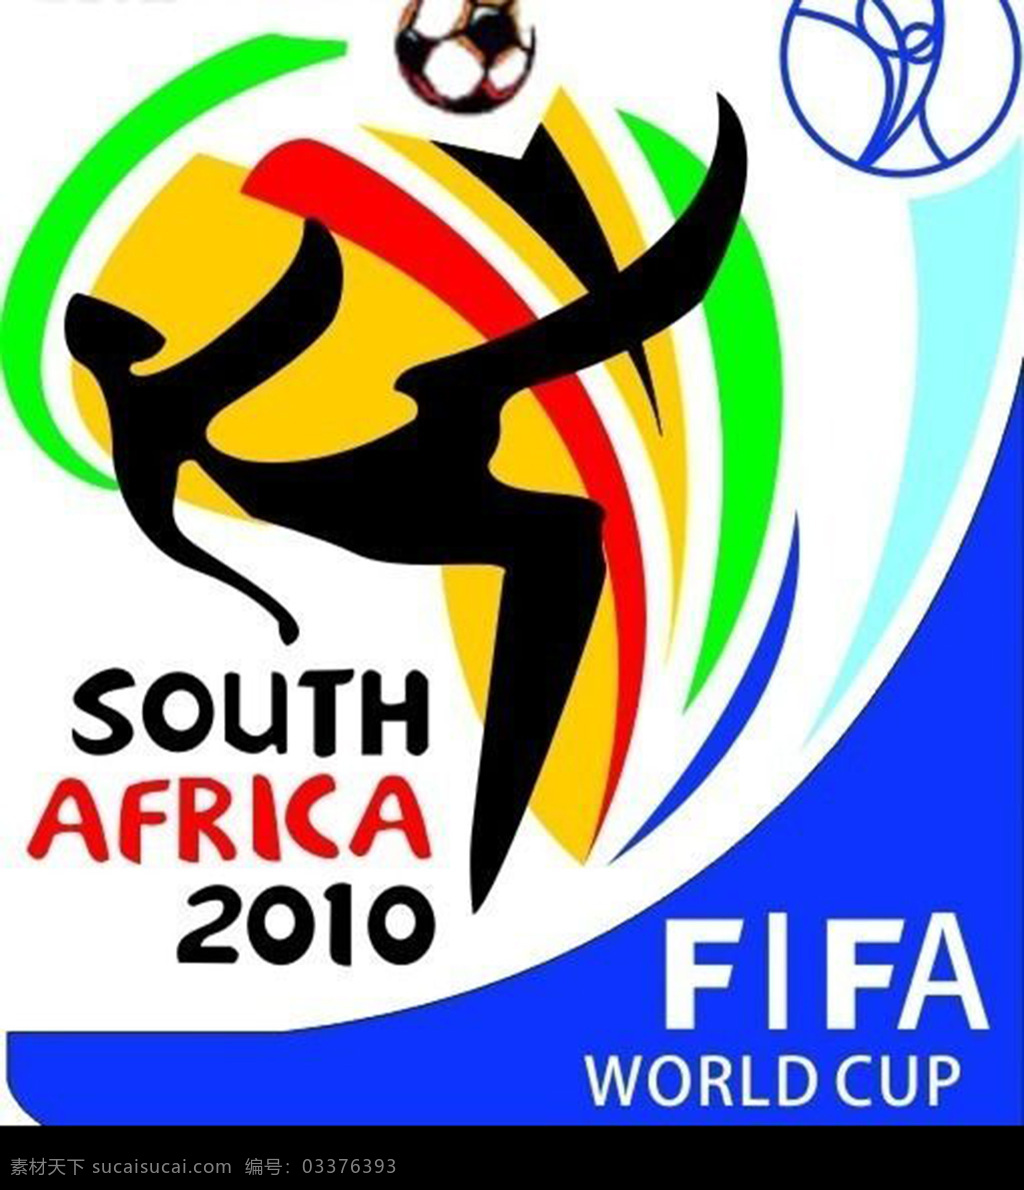 世界杯海报 踢球人物剪影 图标标志 卡通人物 足球 足球素材 矢量足球 足球广告 世界杯 体育运动 白色